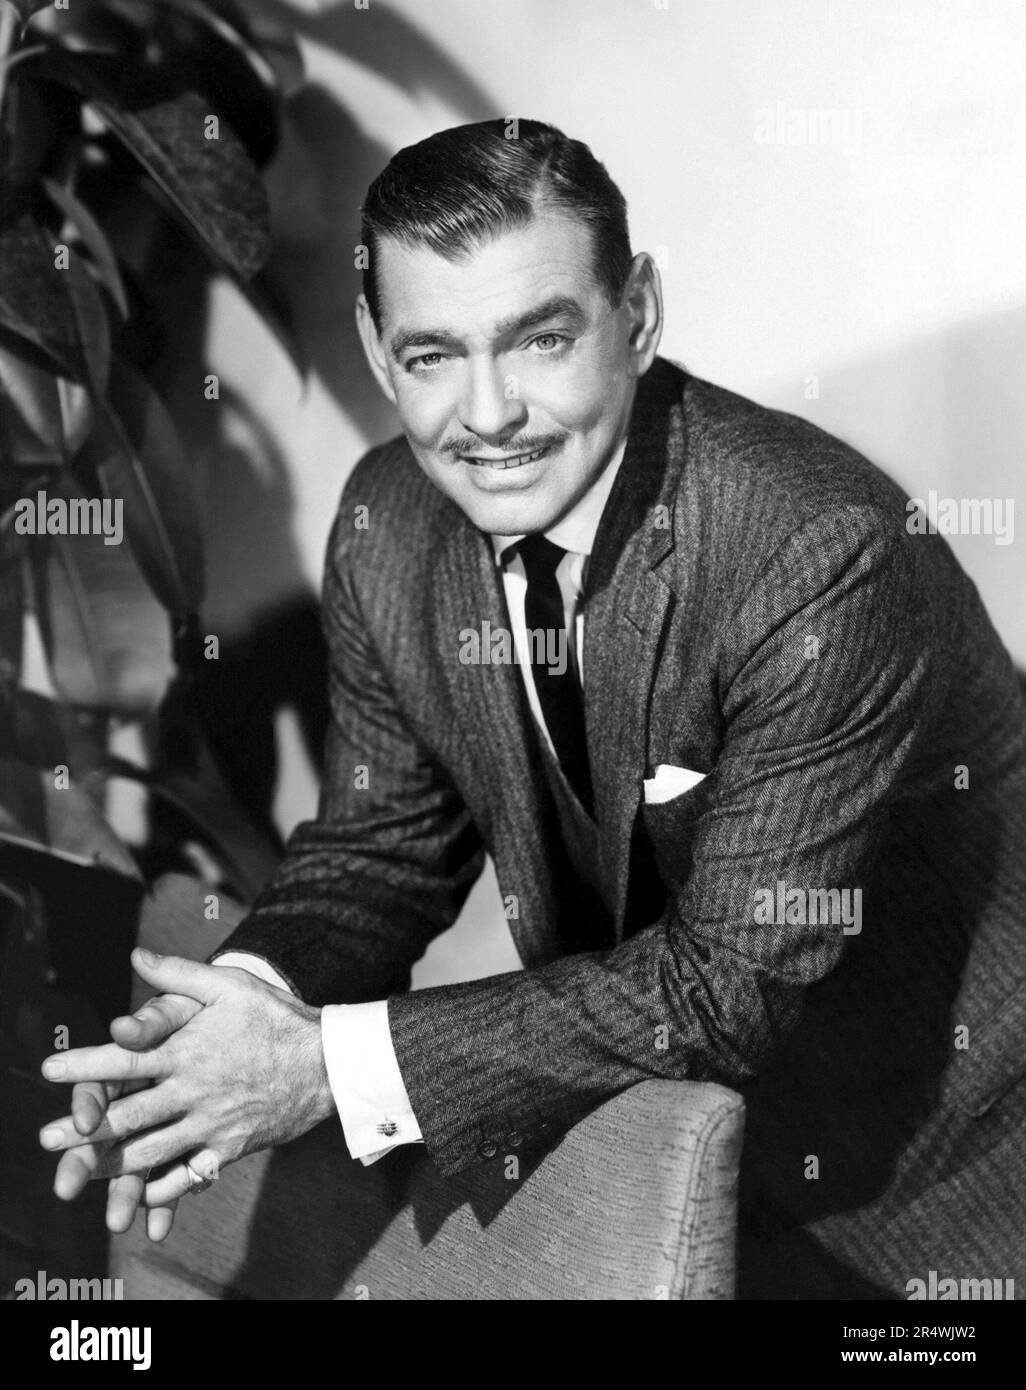 Fotografieren von Clark Gable (1901-1960), US-amerikanischer Schauspieler. Datierte 1950 Stockfoto